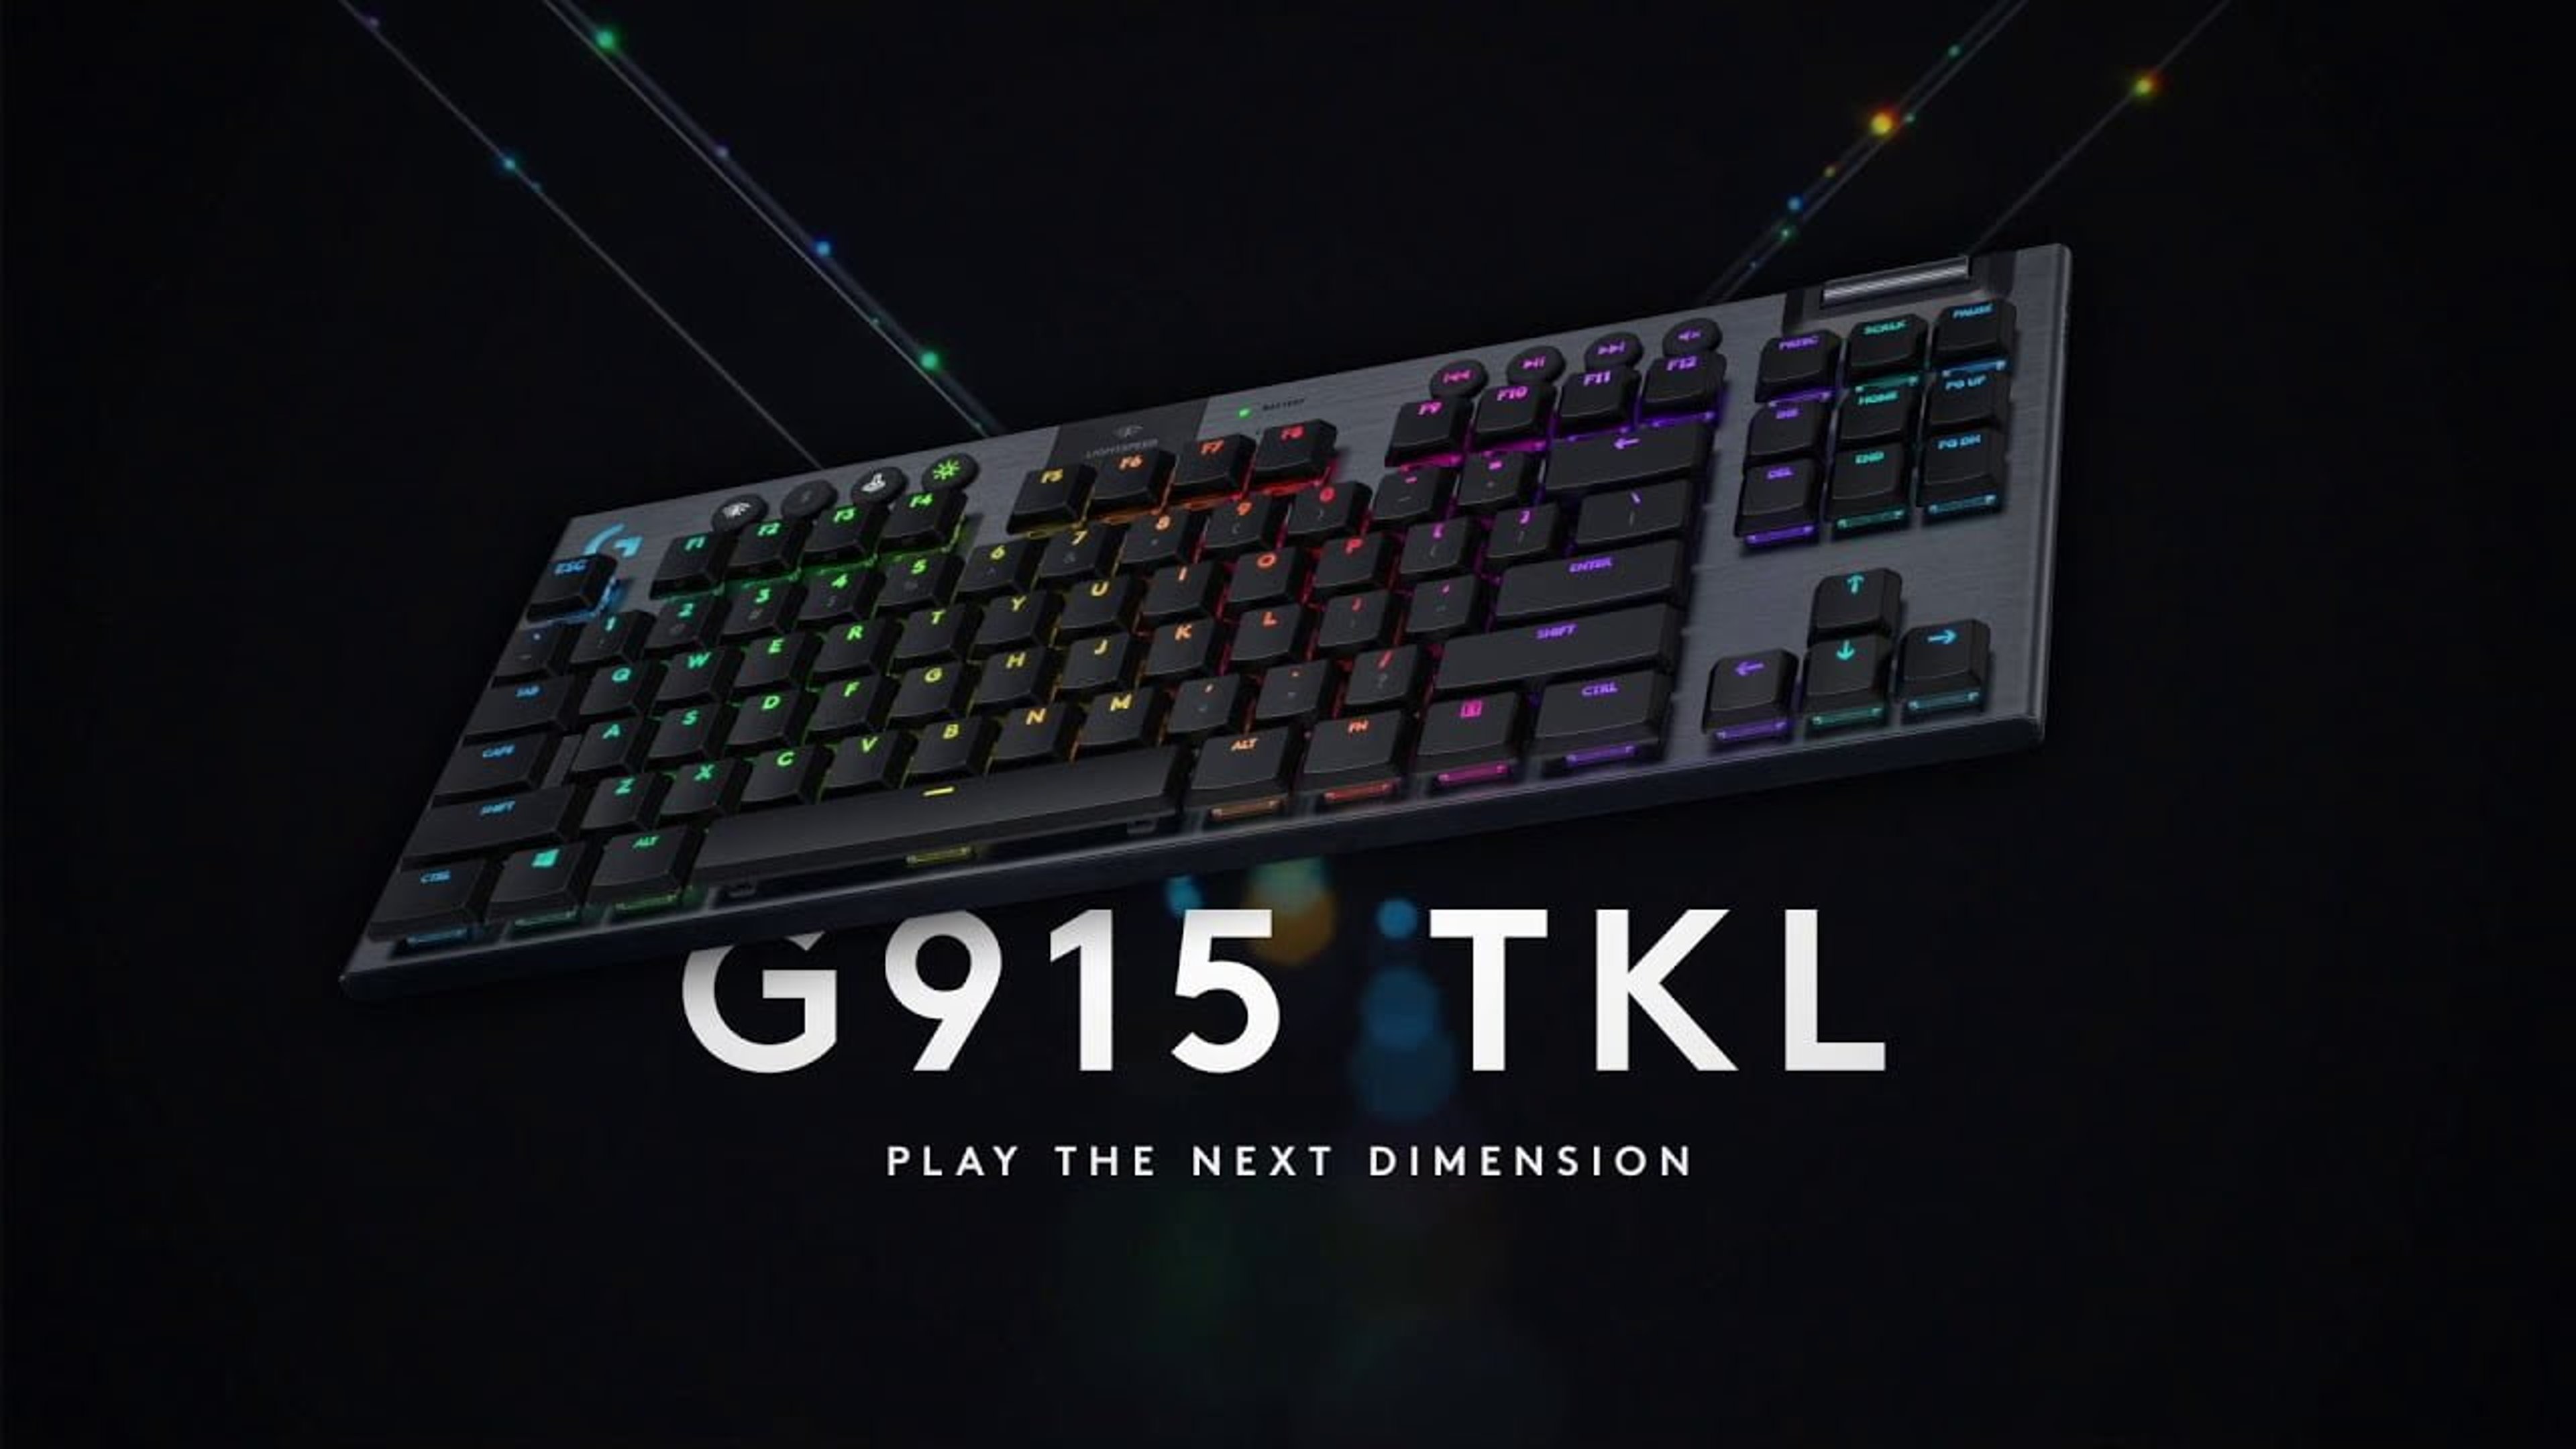 Logitech G915 TKL: la nuova tastiera meccanica da gaming senza tastierino numerico